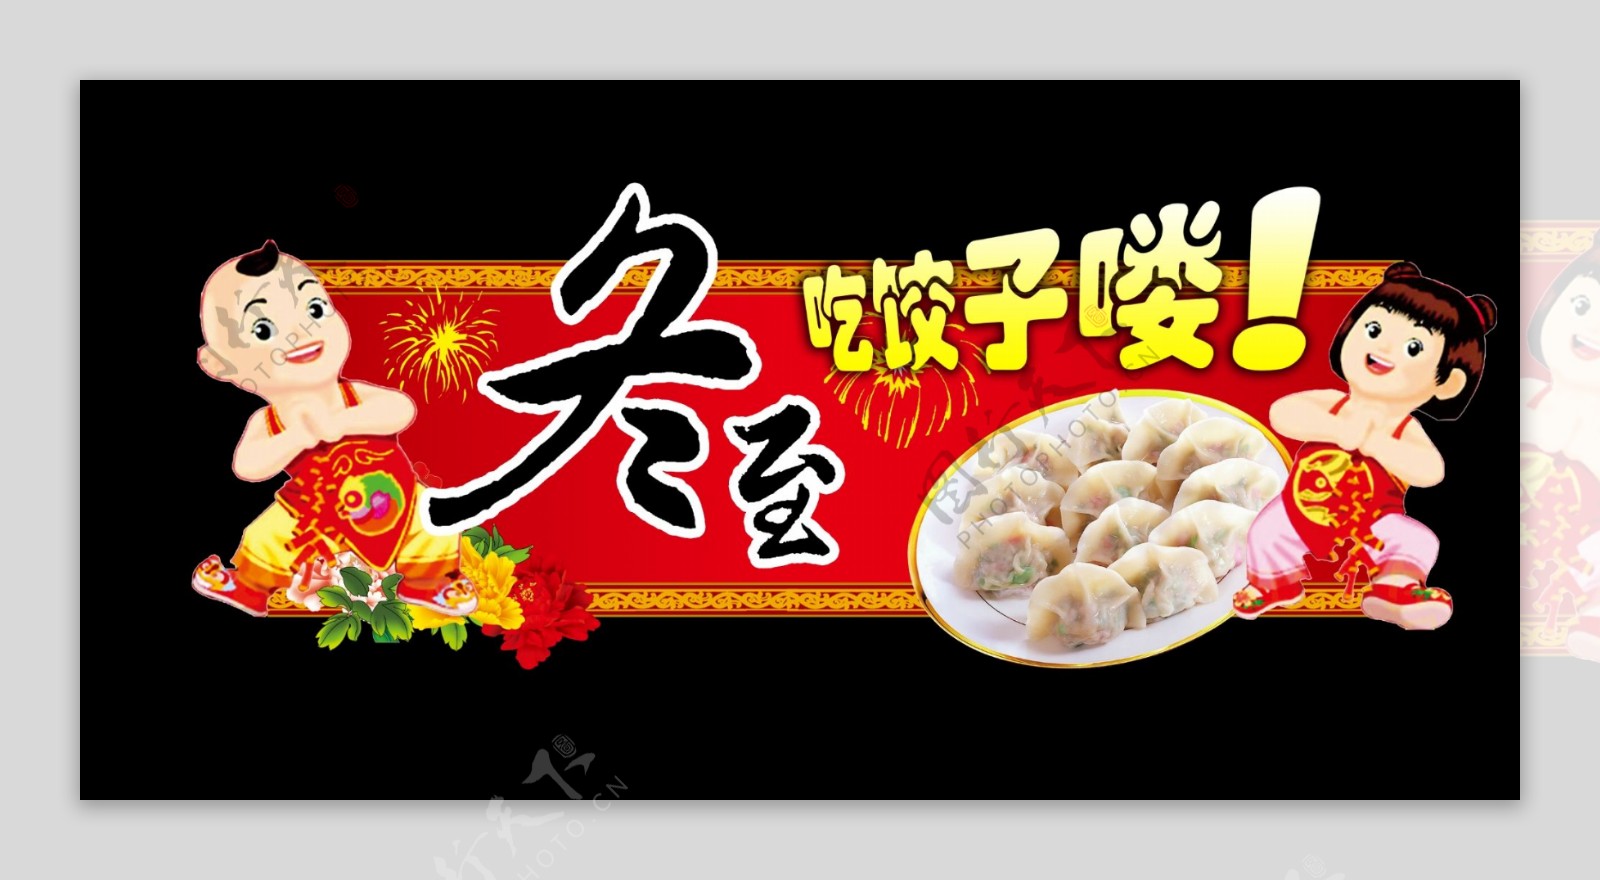 冬至吃饺子图片